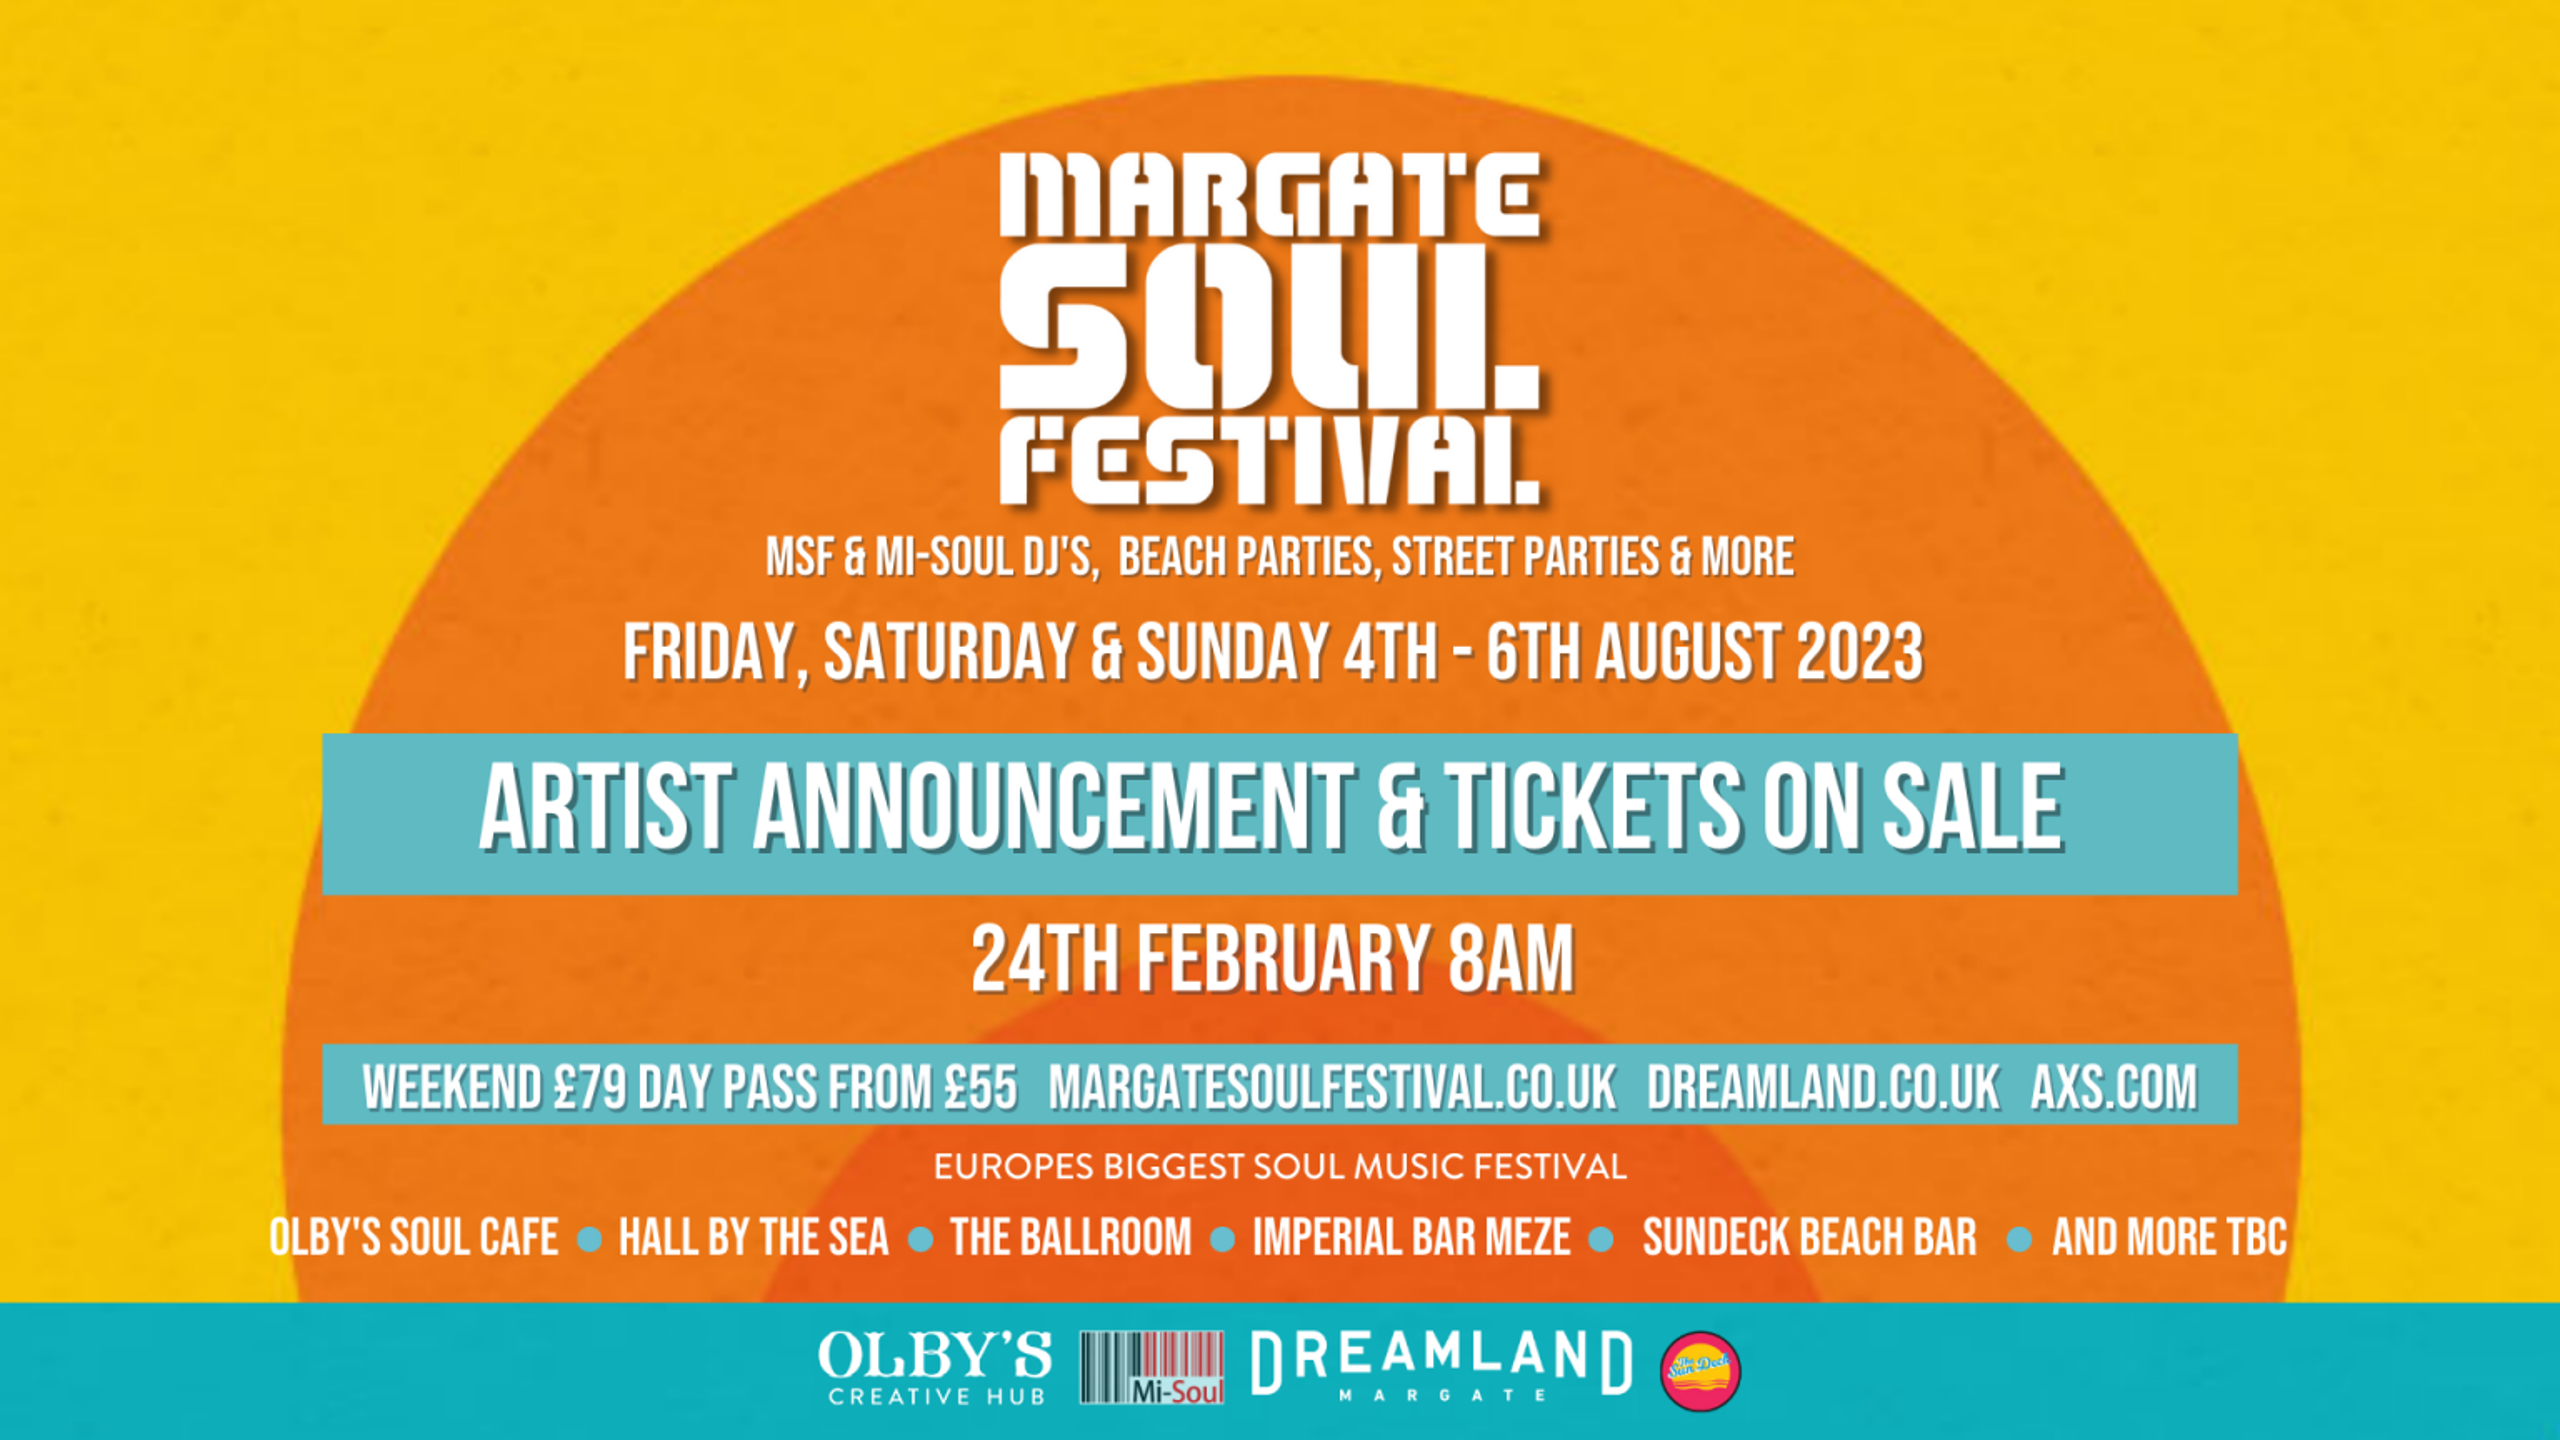 Margate Soul Festival 1676567338.3133702.2560x1440 